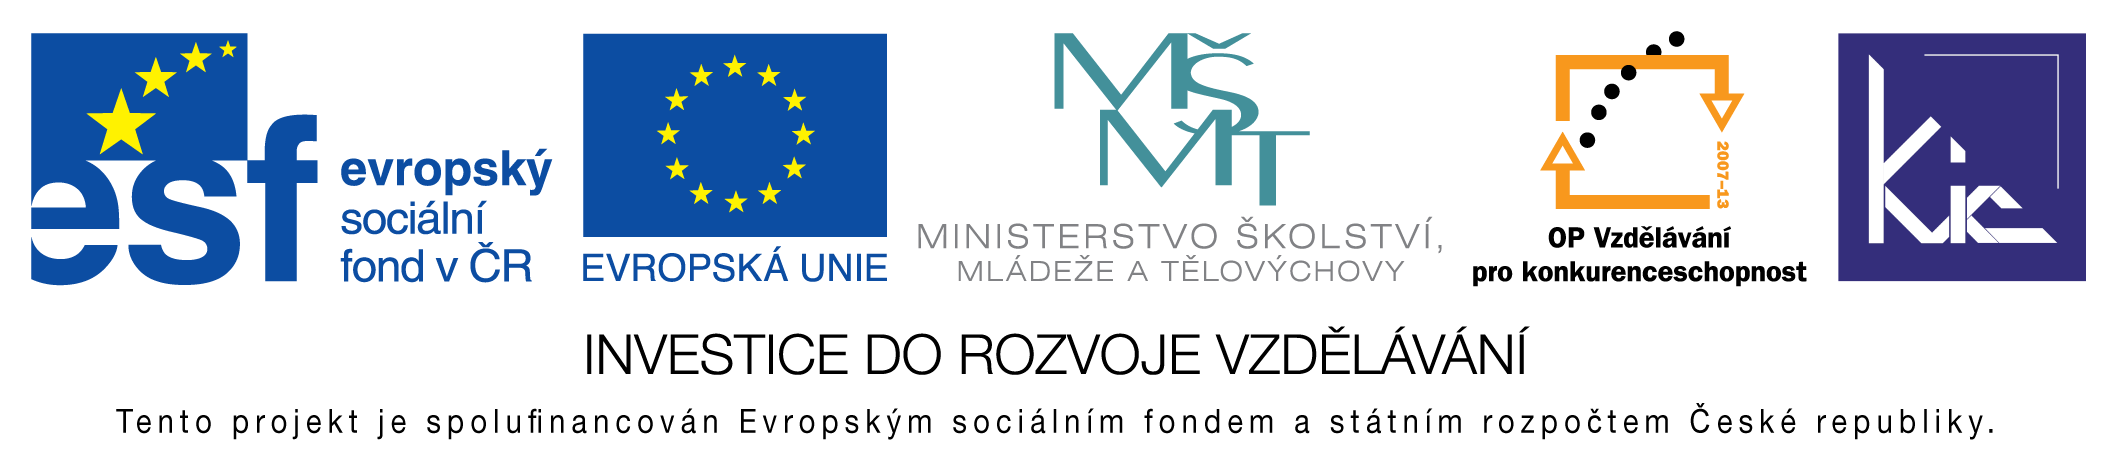 Výukový materiál pro projekt Elektronická školička reg. č. CZ.1.07/1.3.05/02.